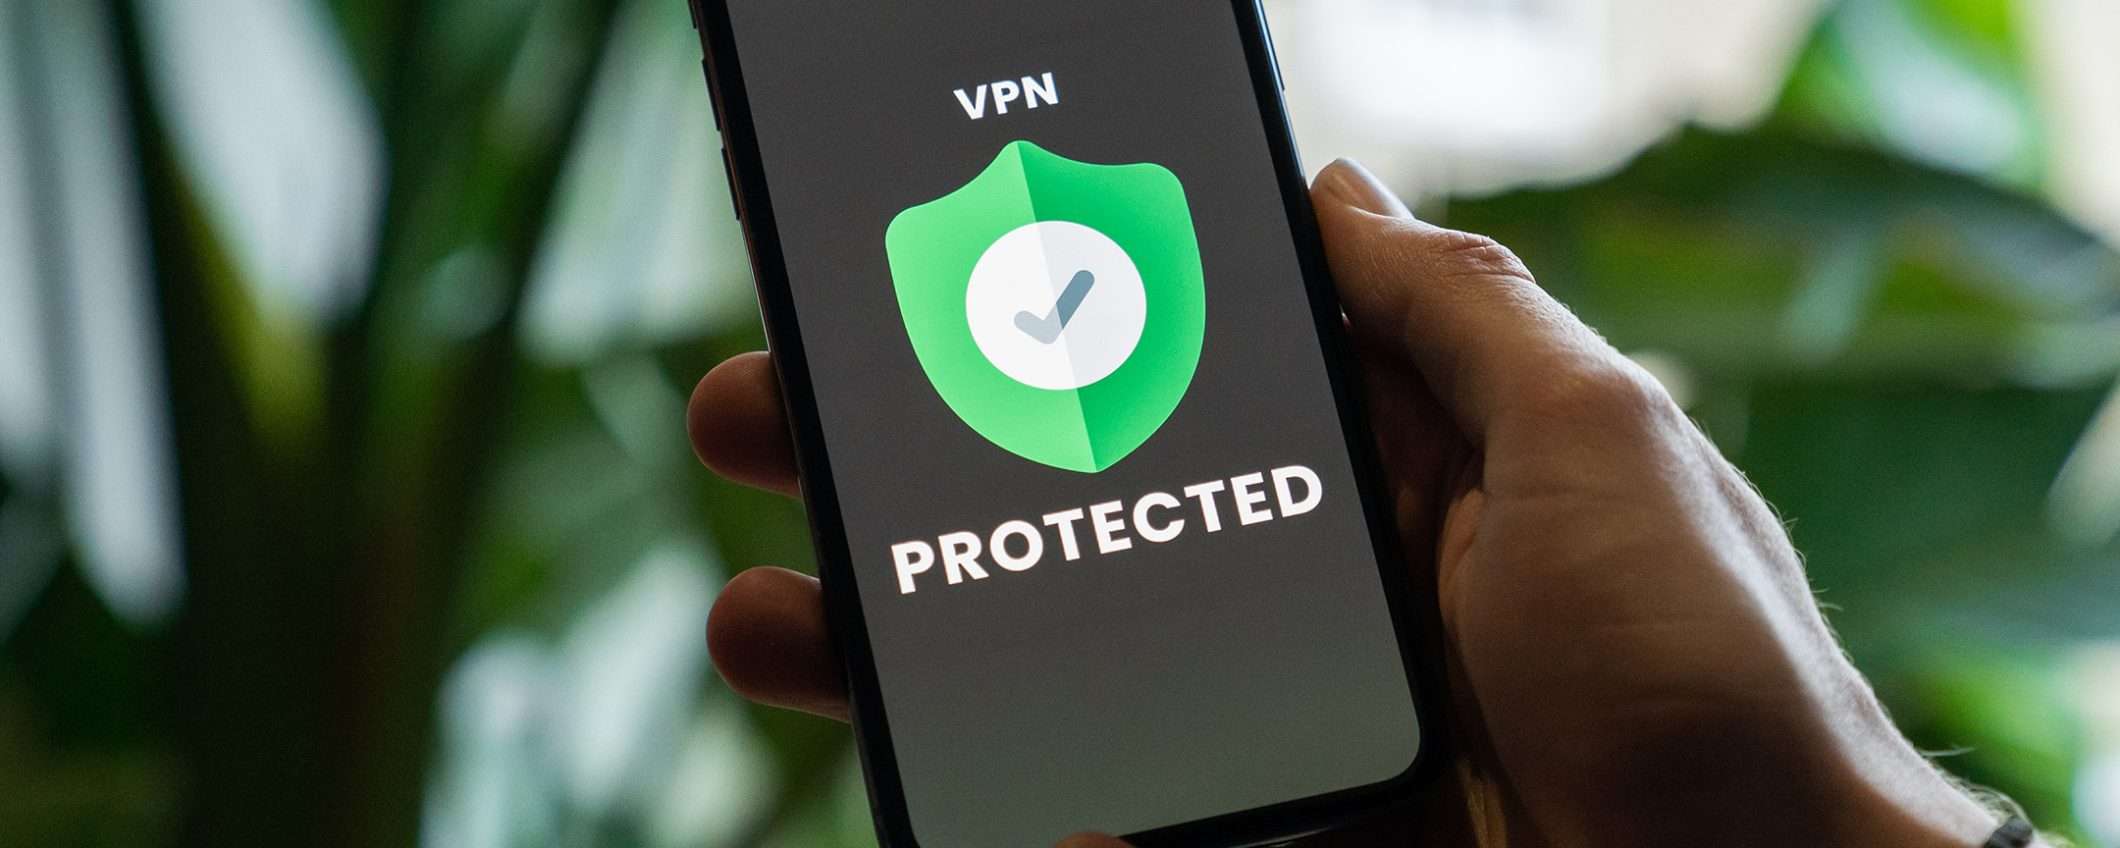 La tua VPN ti protegge? Ecco come testarne la sicurezza